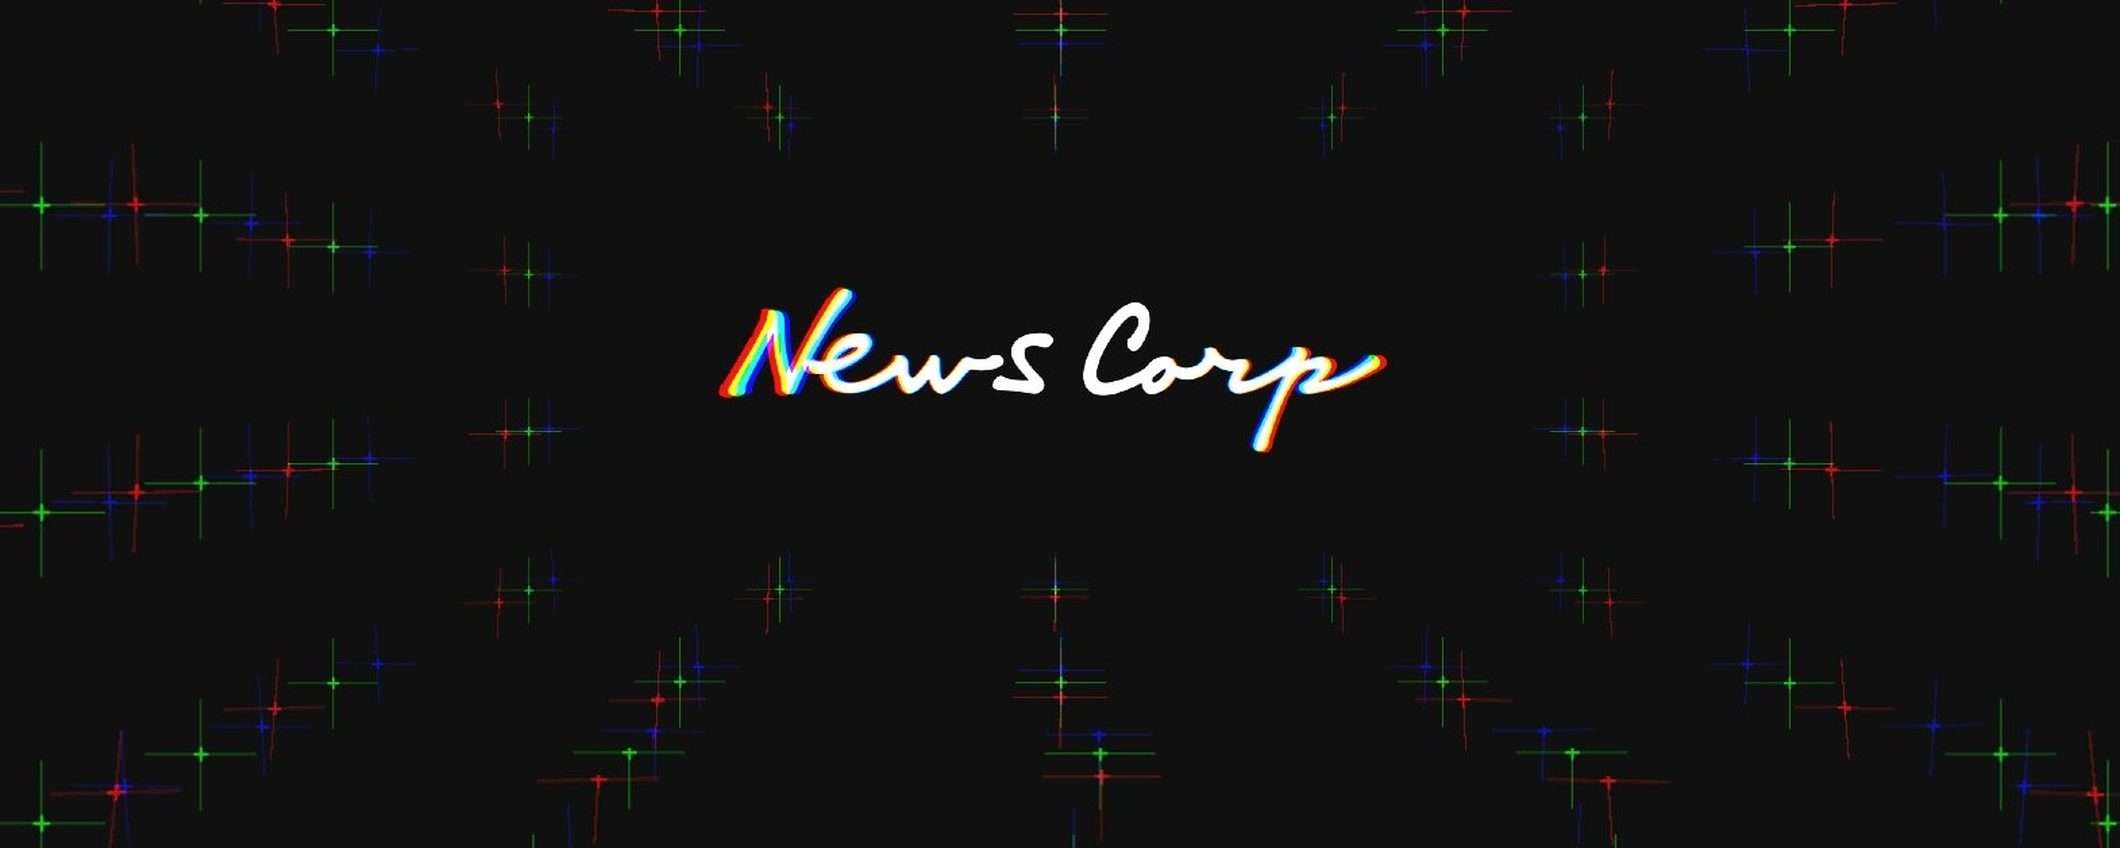 News Corp: attacco informatico dalla Cina (update)